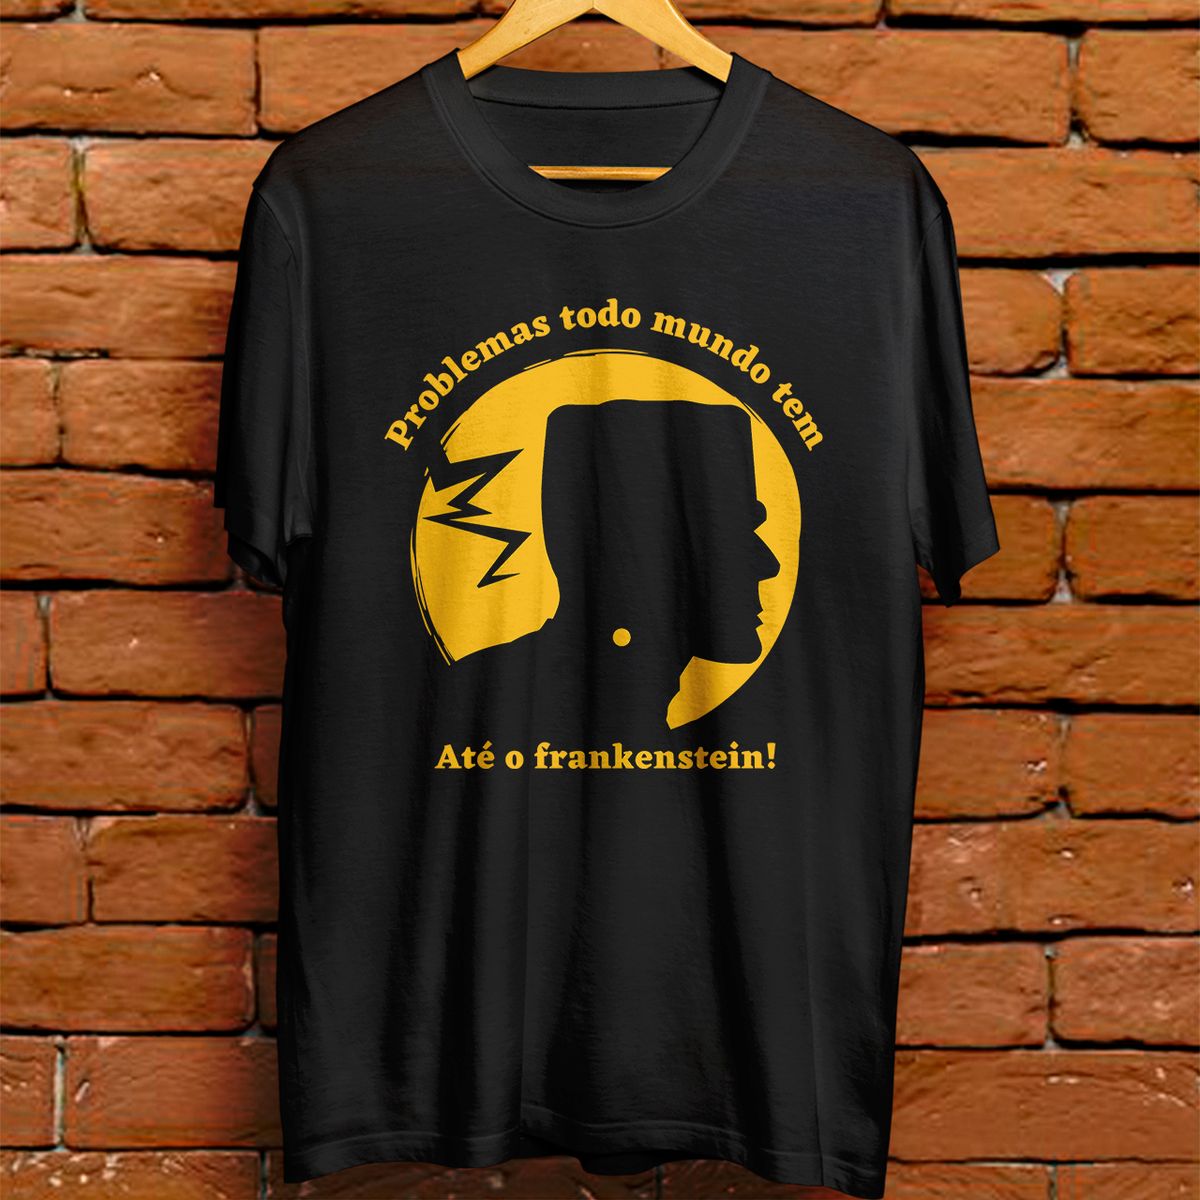 Nome do produto: Camiseta masculina - Problemas todo mundo tem, até o frankenstein!